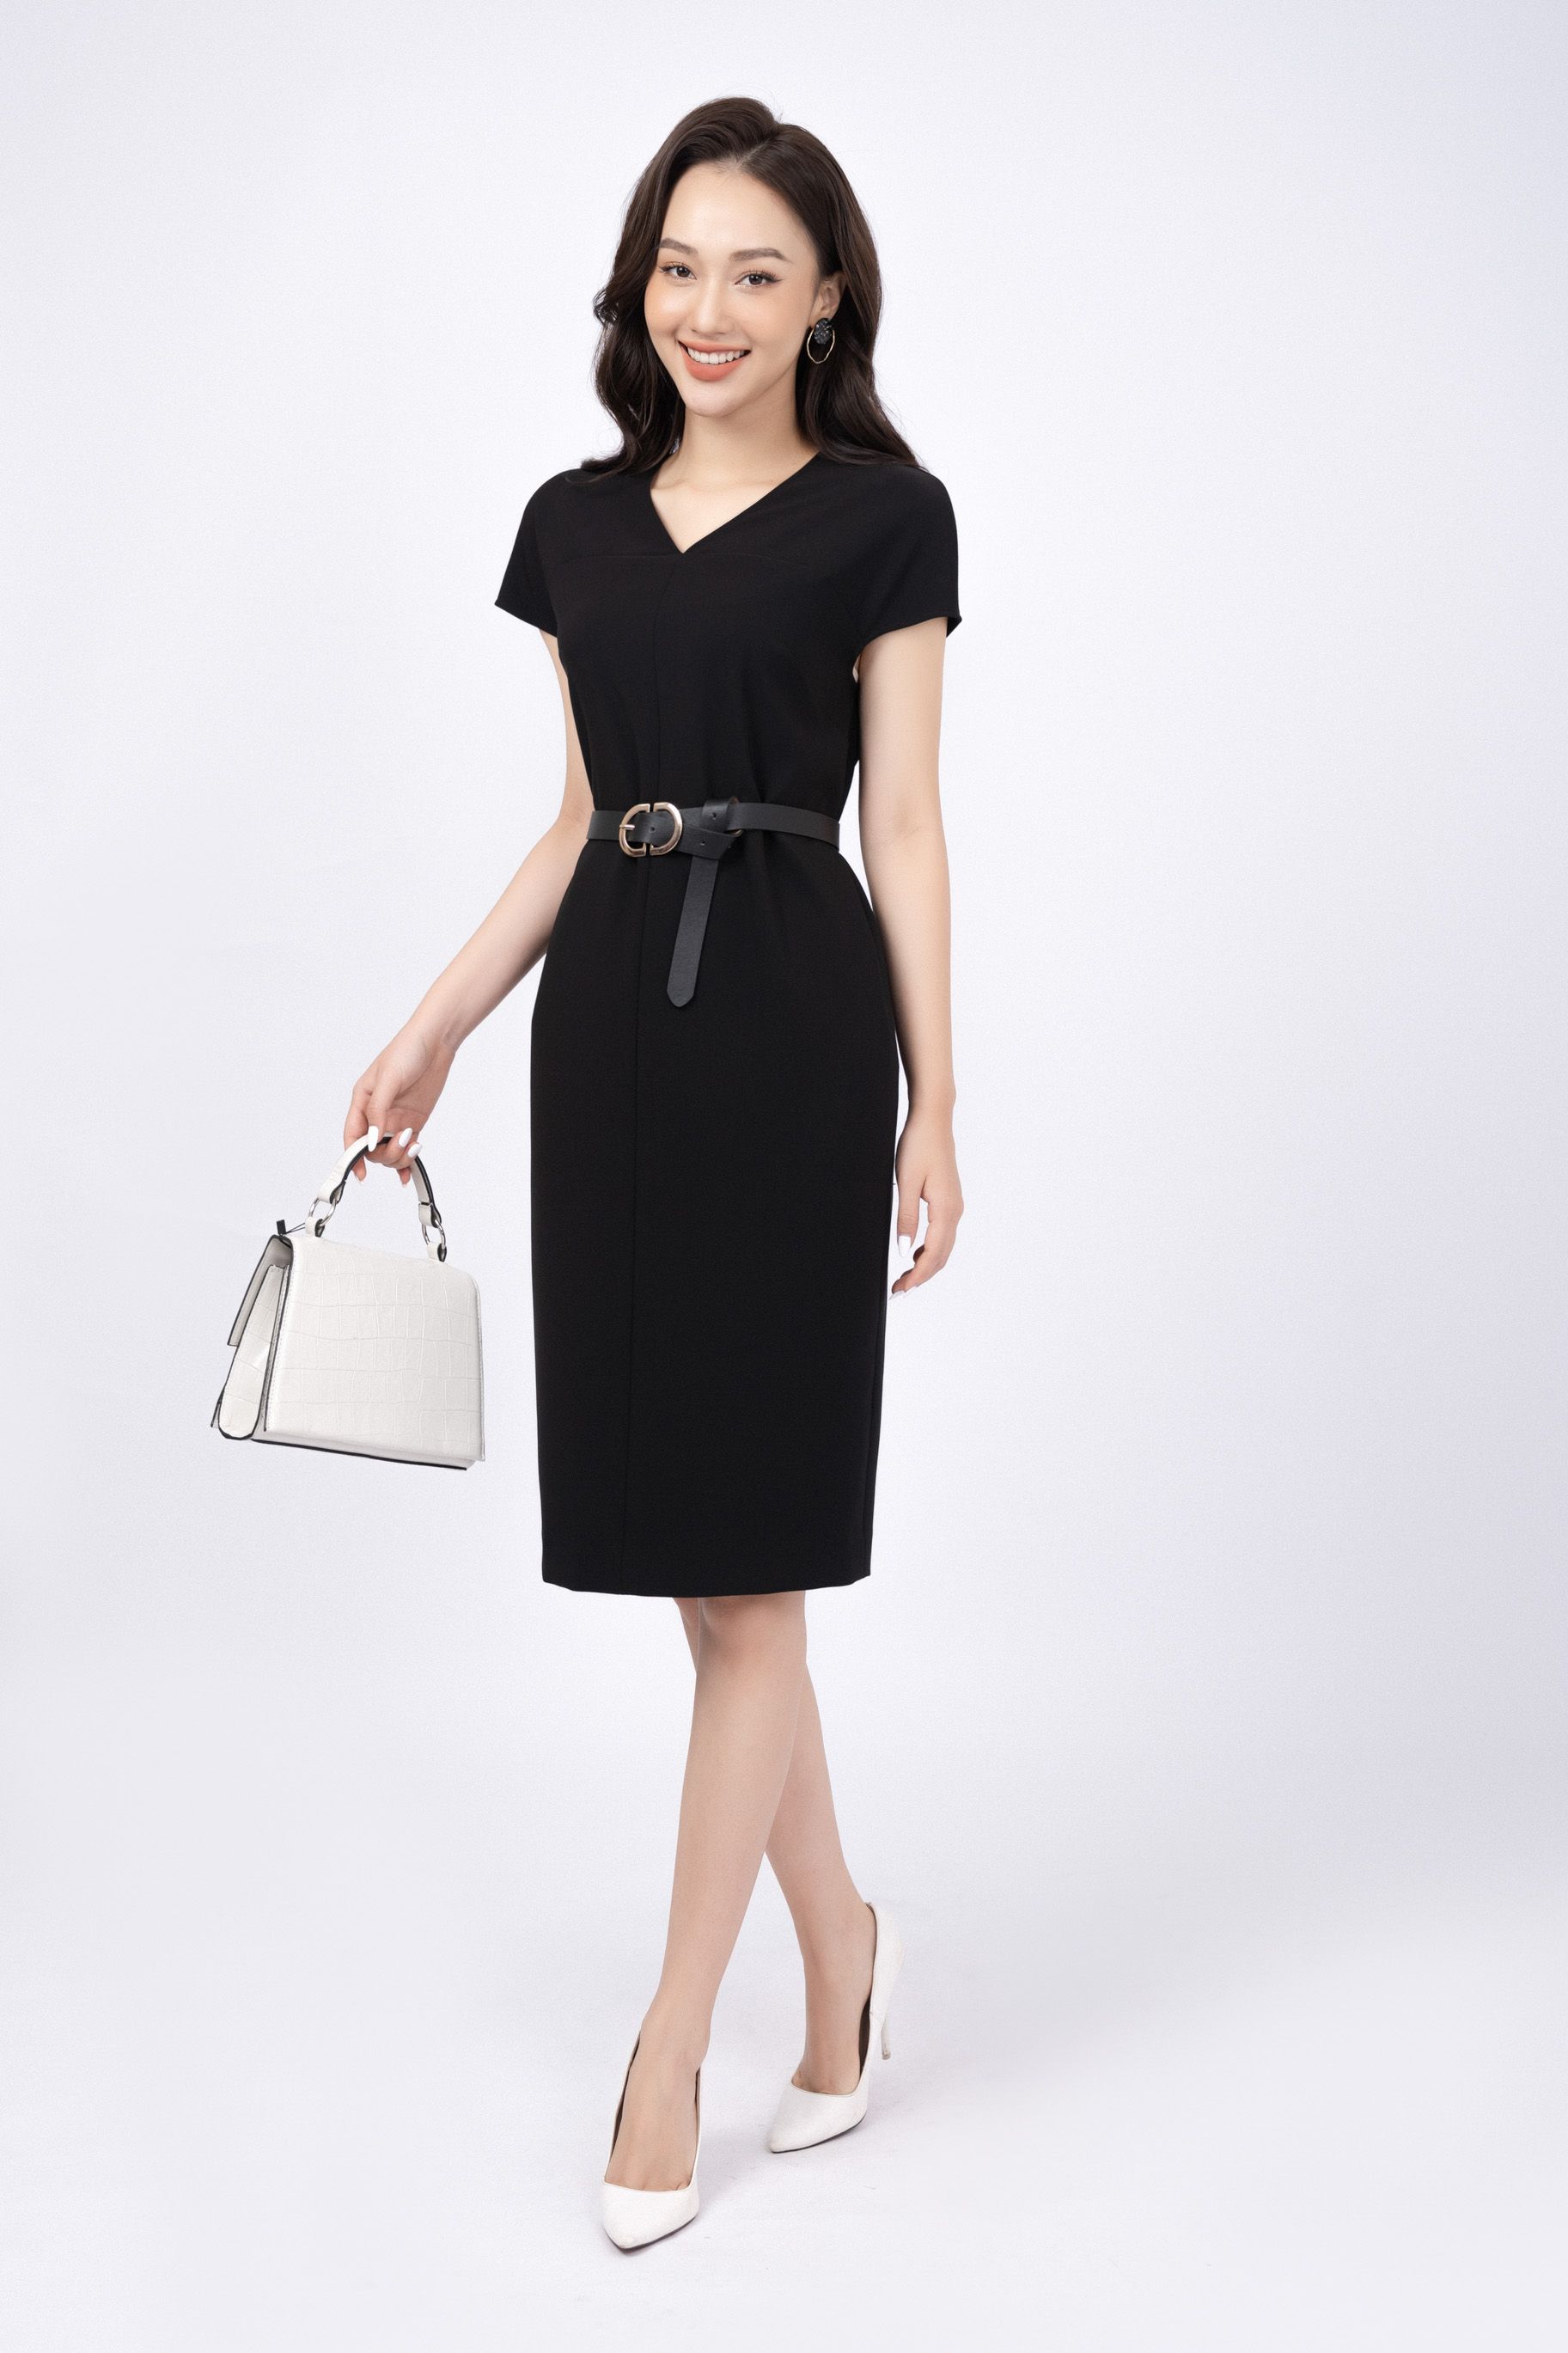 Đai váy bản to 8cm - Thắt lưng - Dây nịt nữ và phụ kiện | ThờiTrangNữ.vn